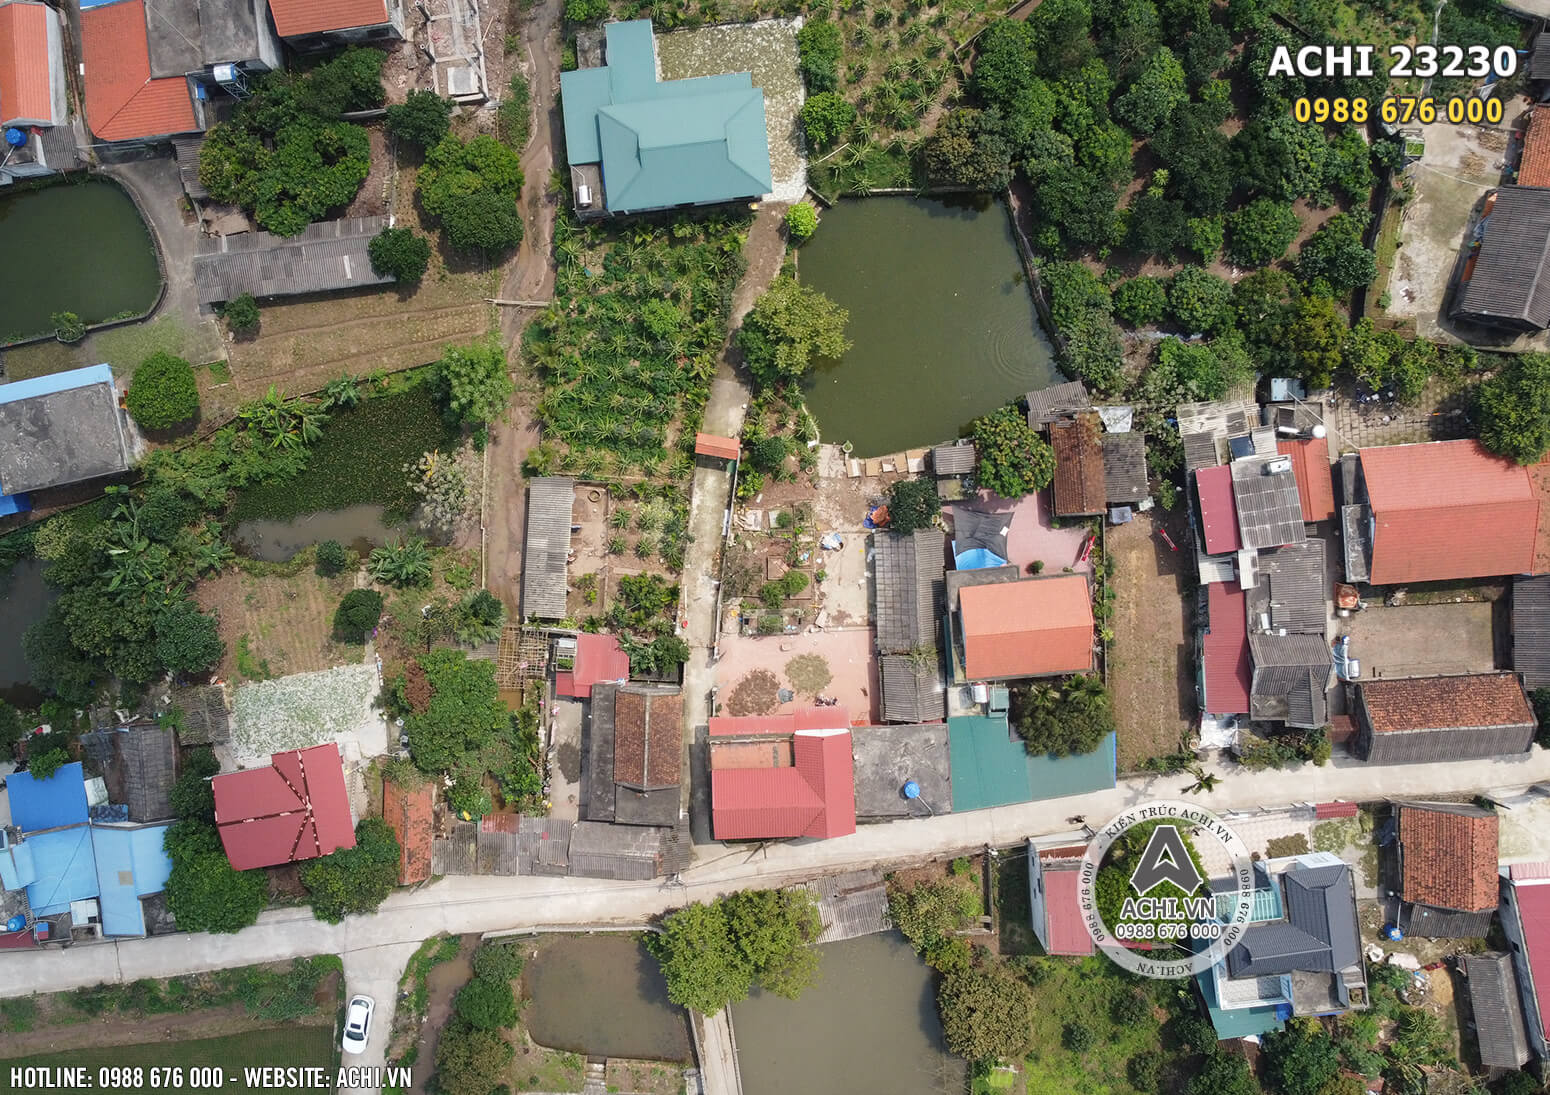 Hình ảnh khuôn đất thực tế từ flycam trong quá trình kiến trúc sư về khảo sát khuôn đất và trao đổi cùng kiến trúc sư